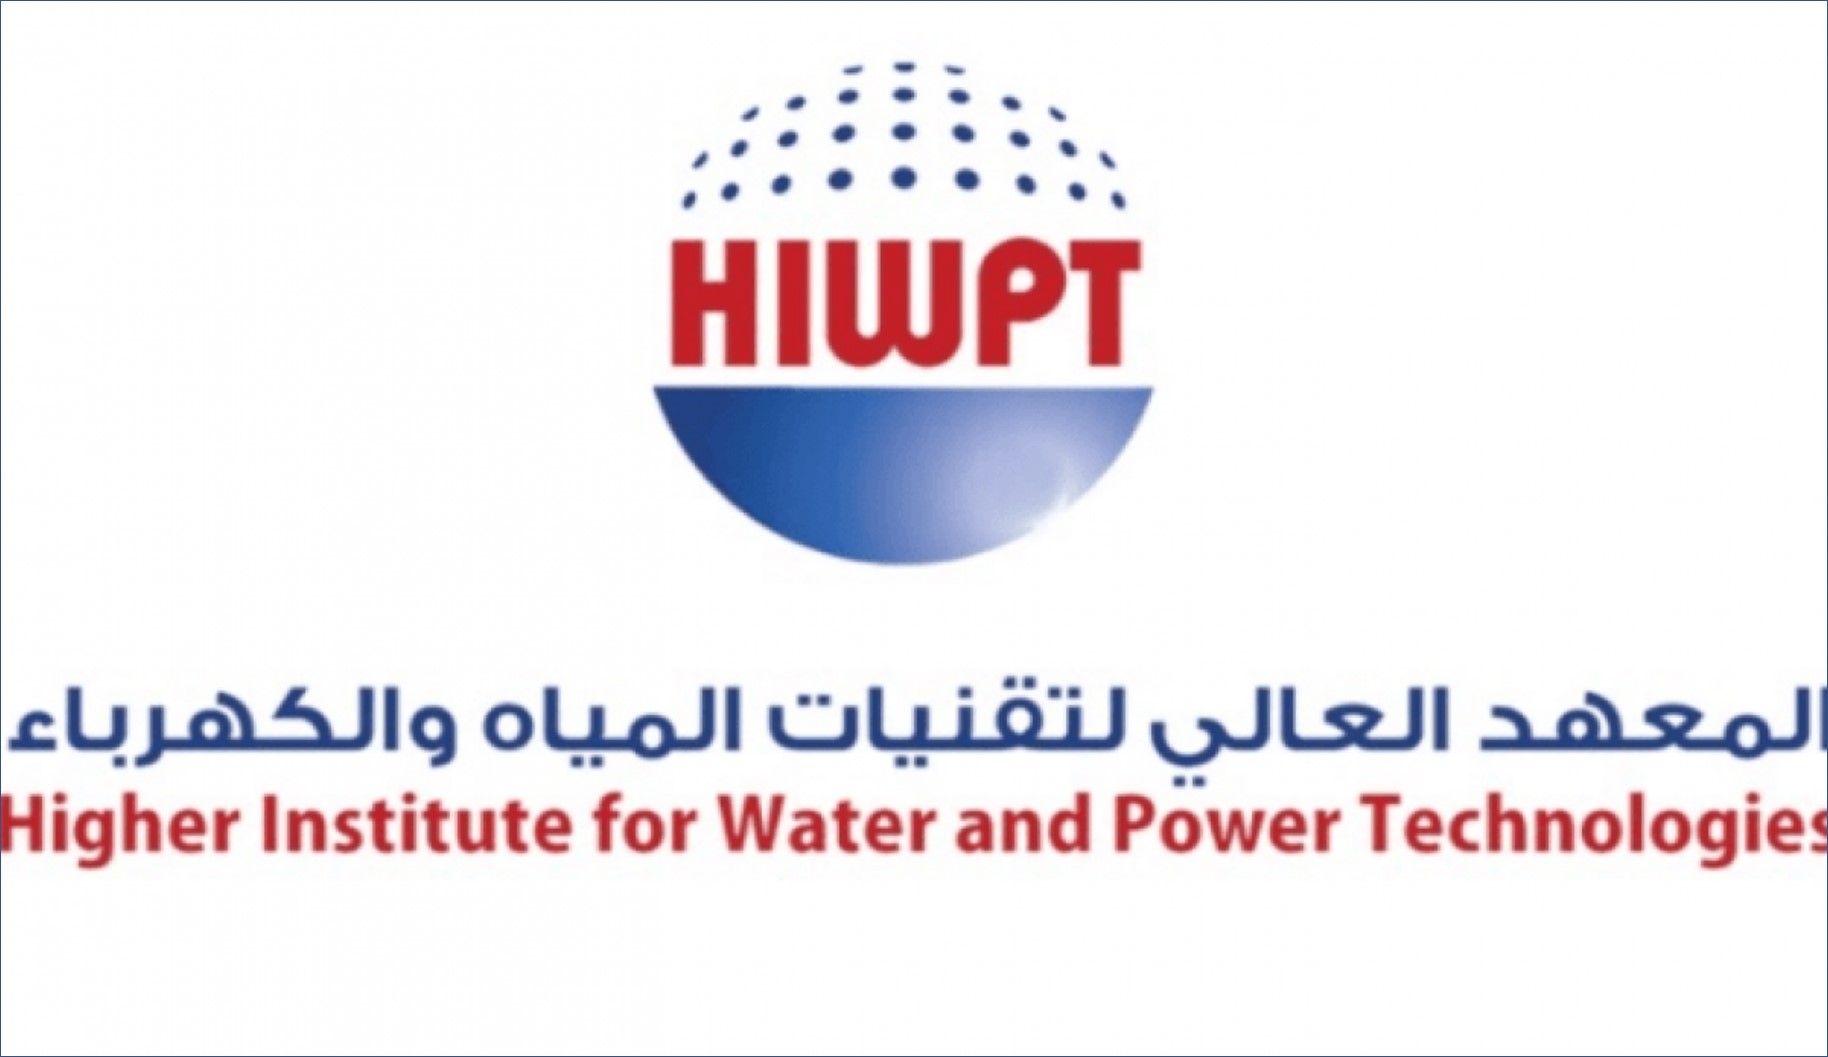 المعهد العالي لتقنيات المياه والكهرباء يعلن عن برنامج مبتدئ بالتوظيف للنساء